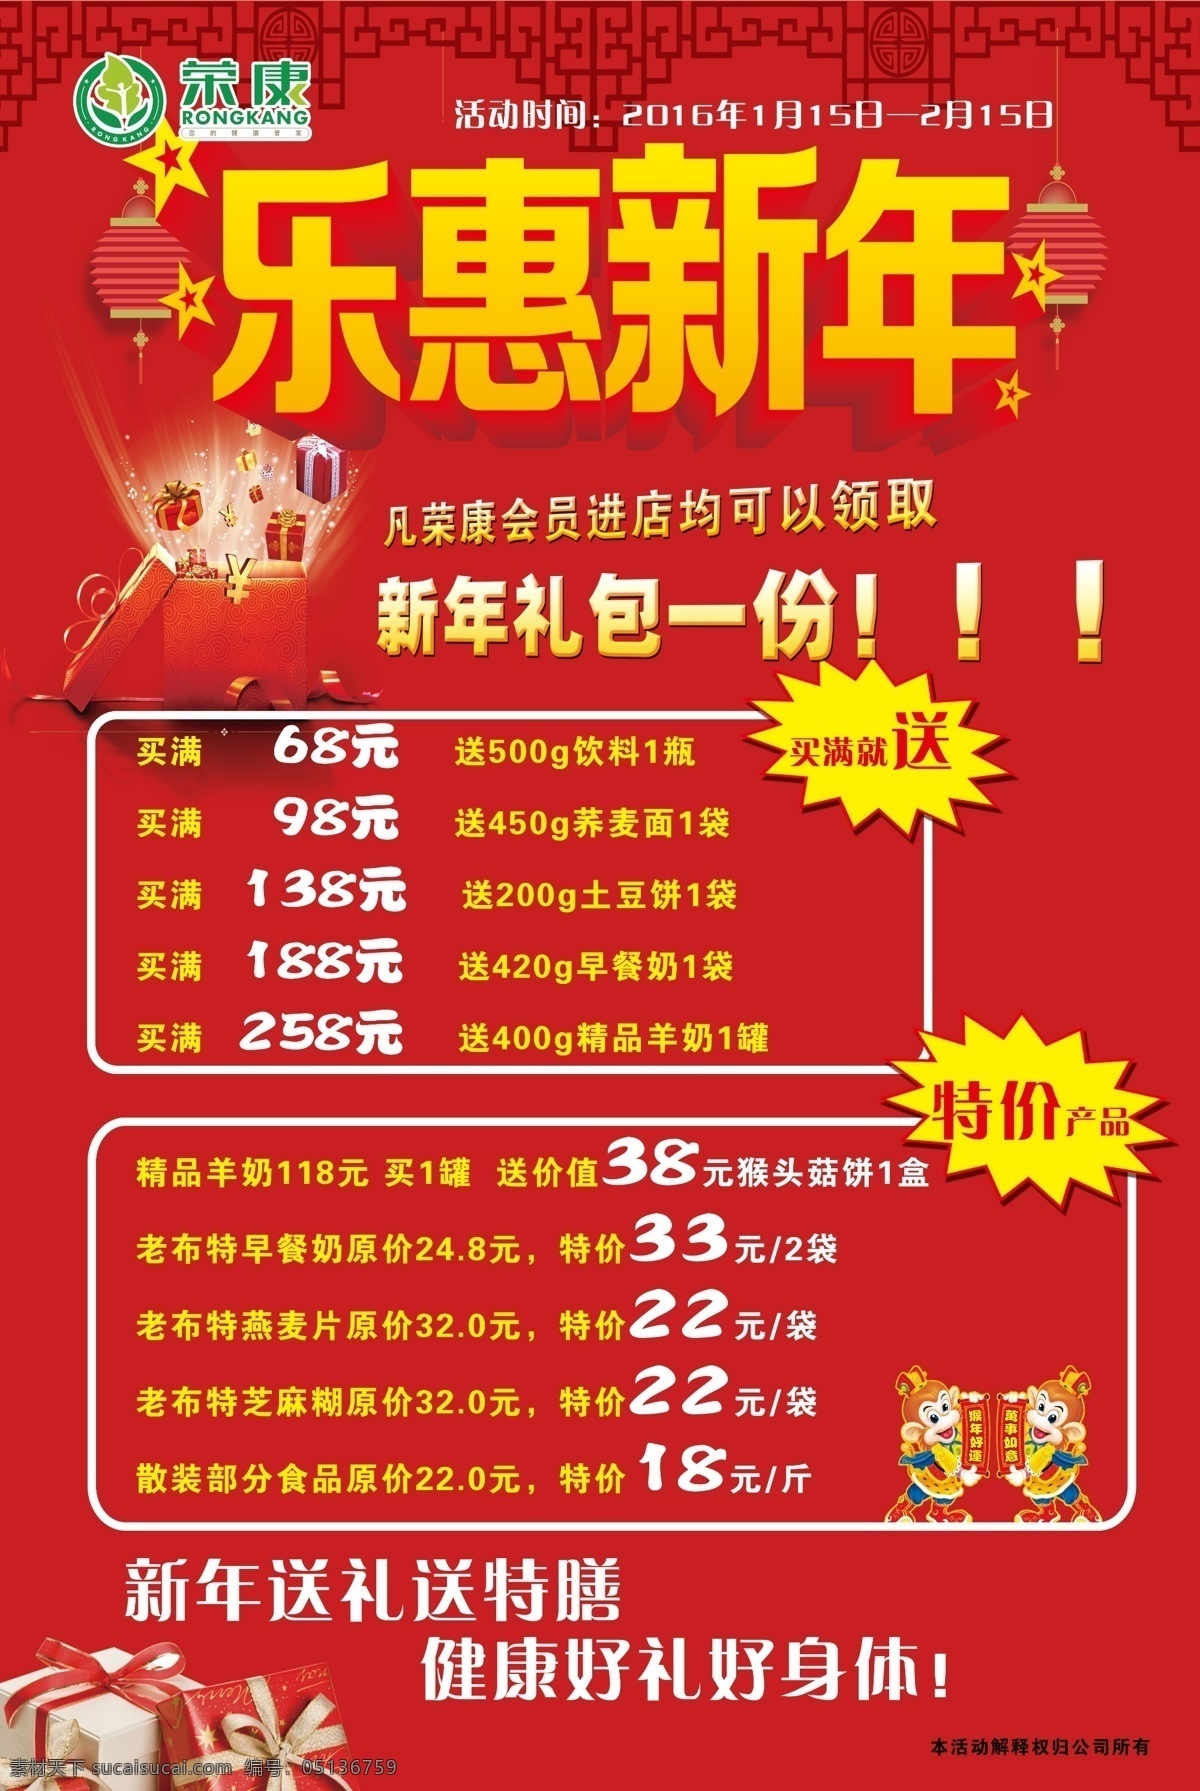 乐惠新年海报 海报 乐惠新年 荣康 logo 宣传单 红底 红色